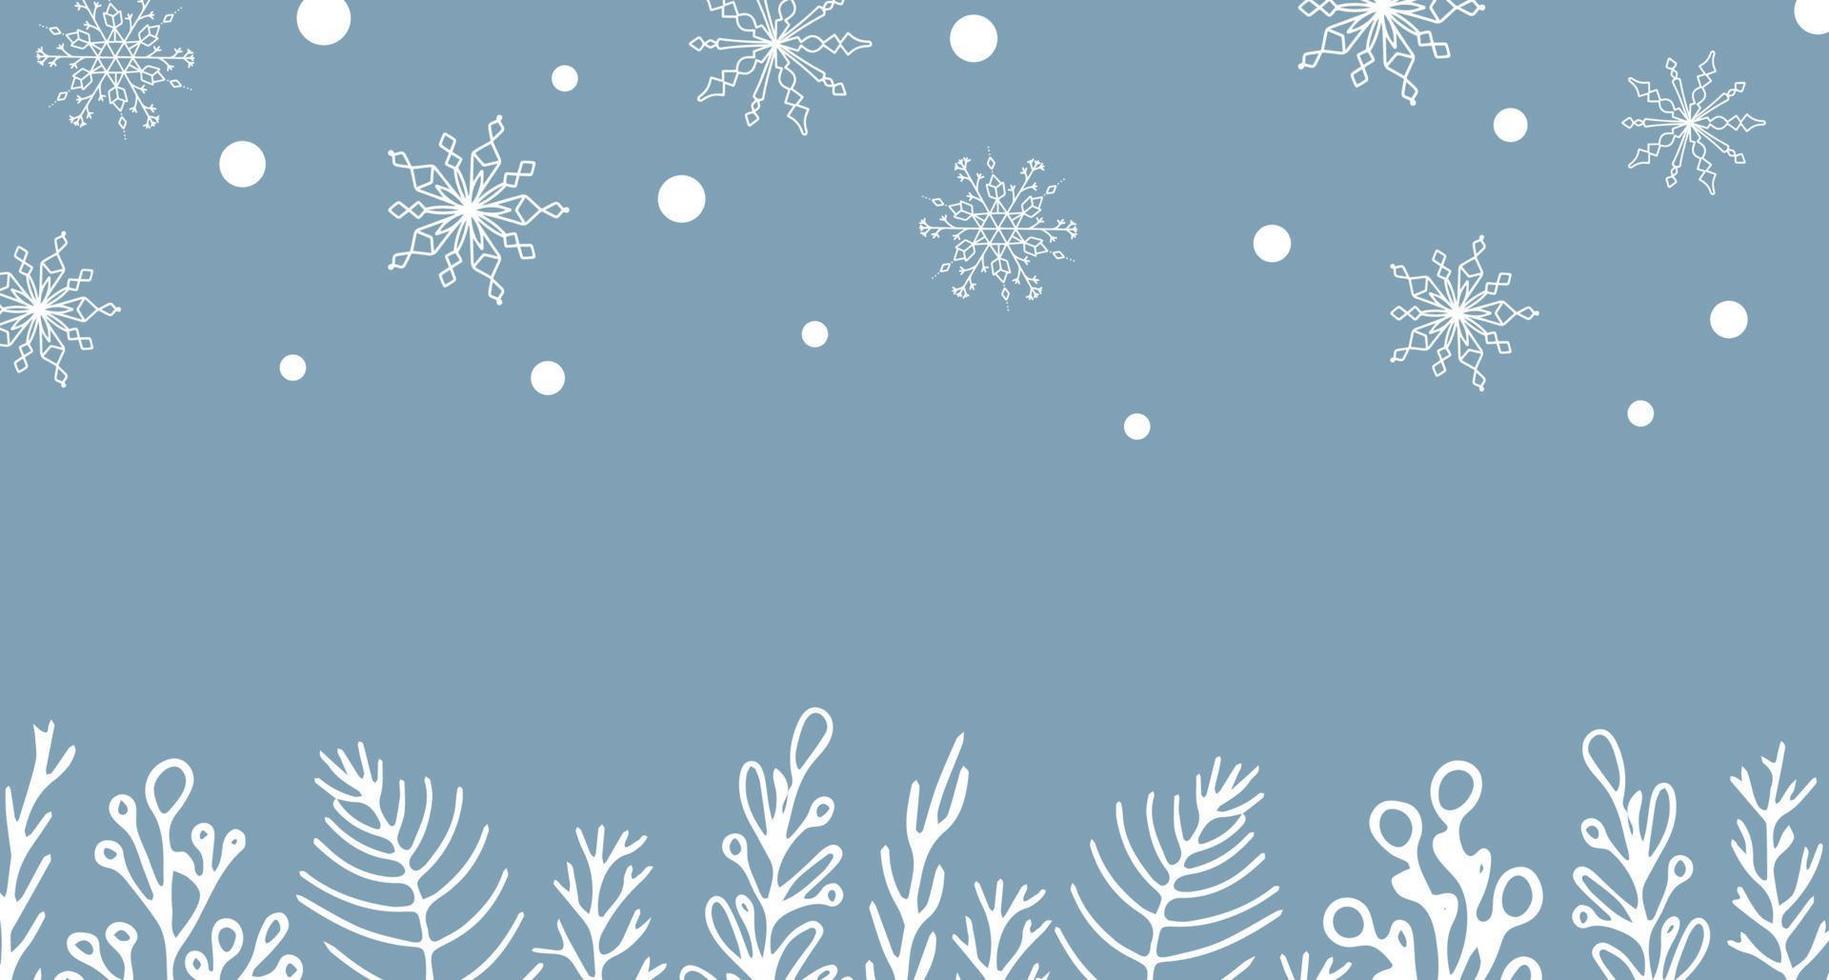 bel ensemble d'éléments botaniques blancs arbre de noël, baies pour la conception d'hiver. collection d'éléments de noël nouvel an. silhouettes gelées de brindilles de cristal sur fond bleu. vecteur